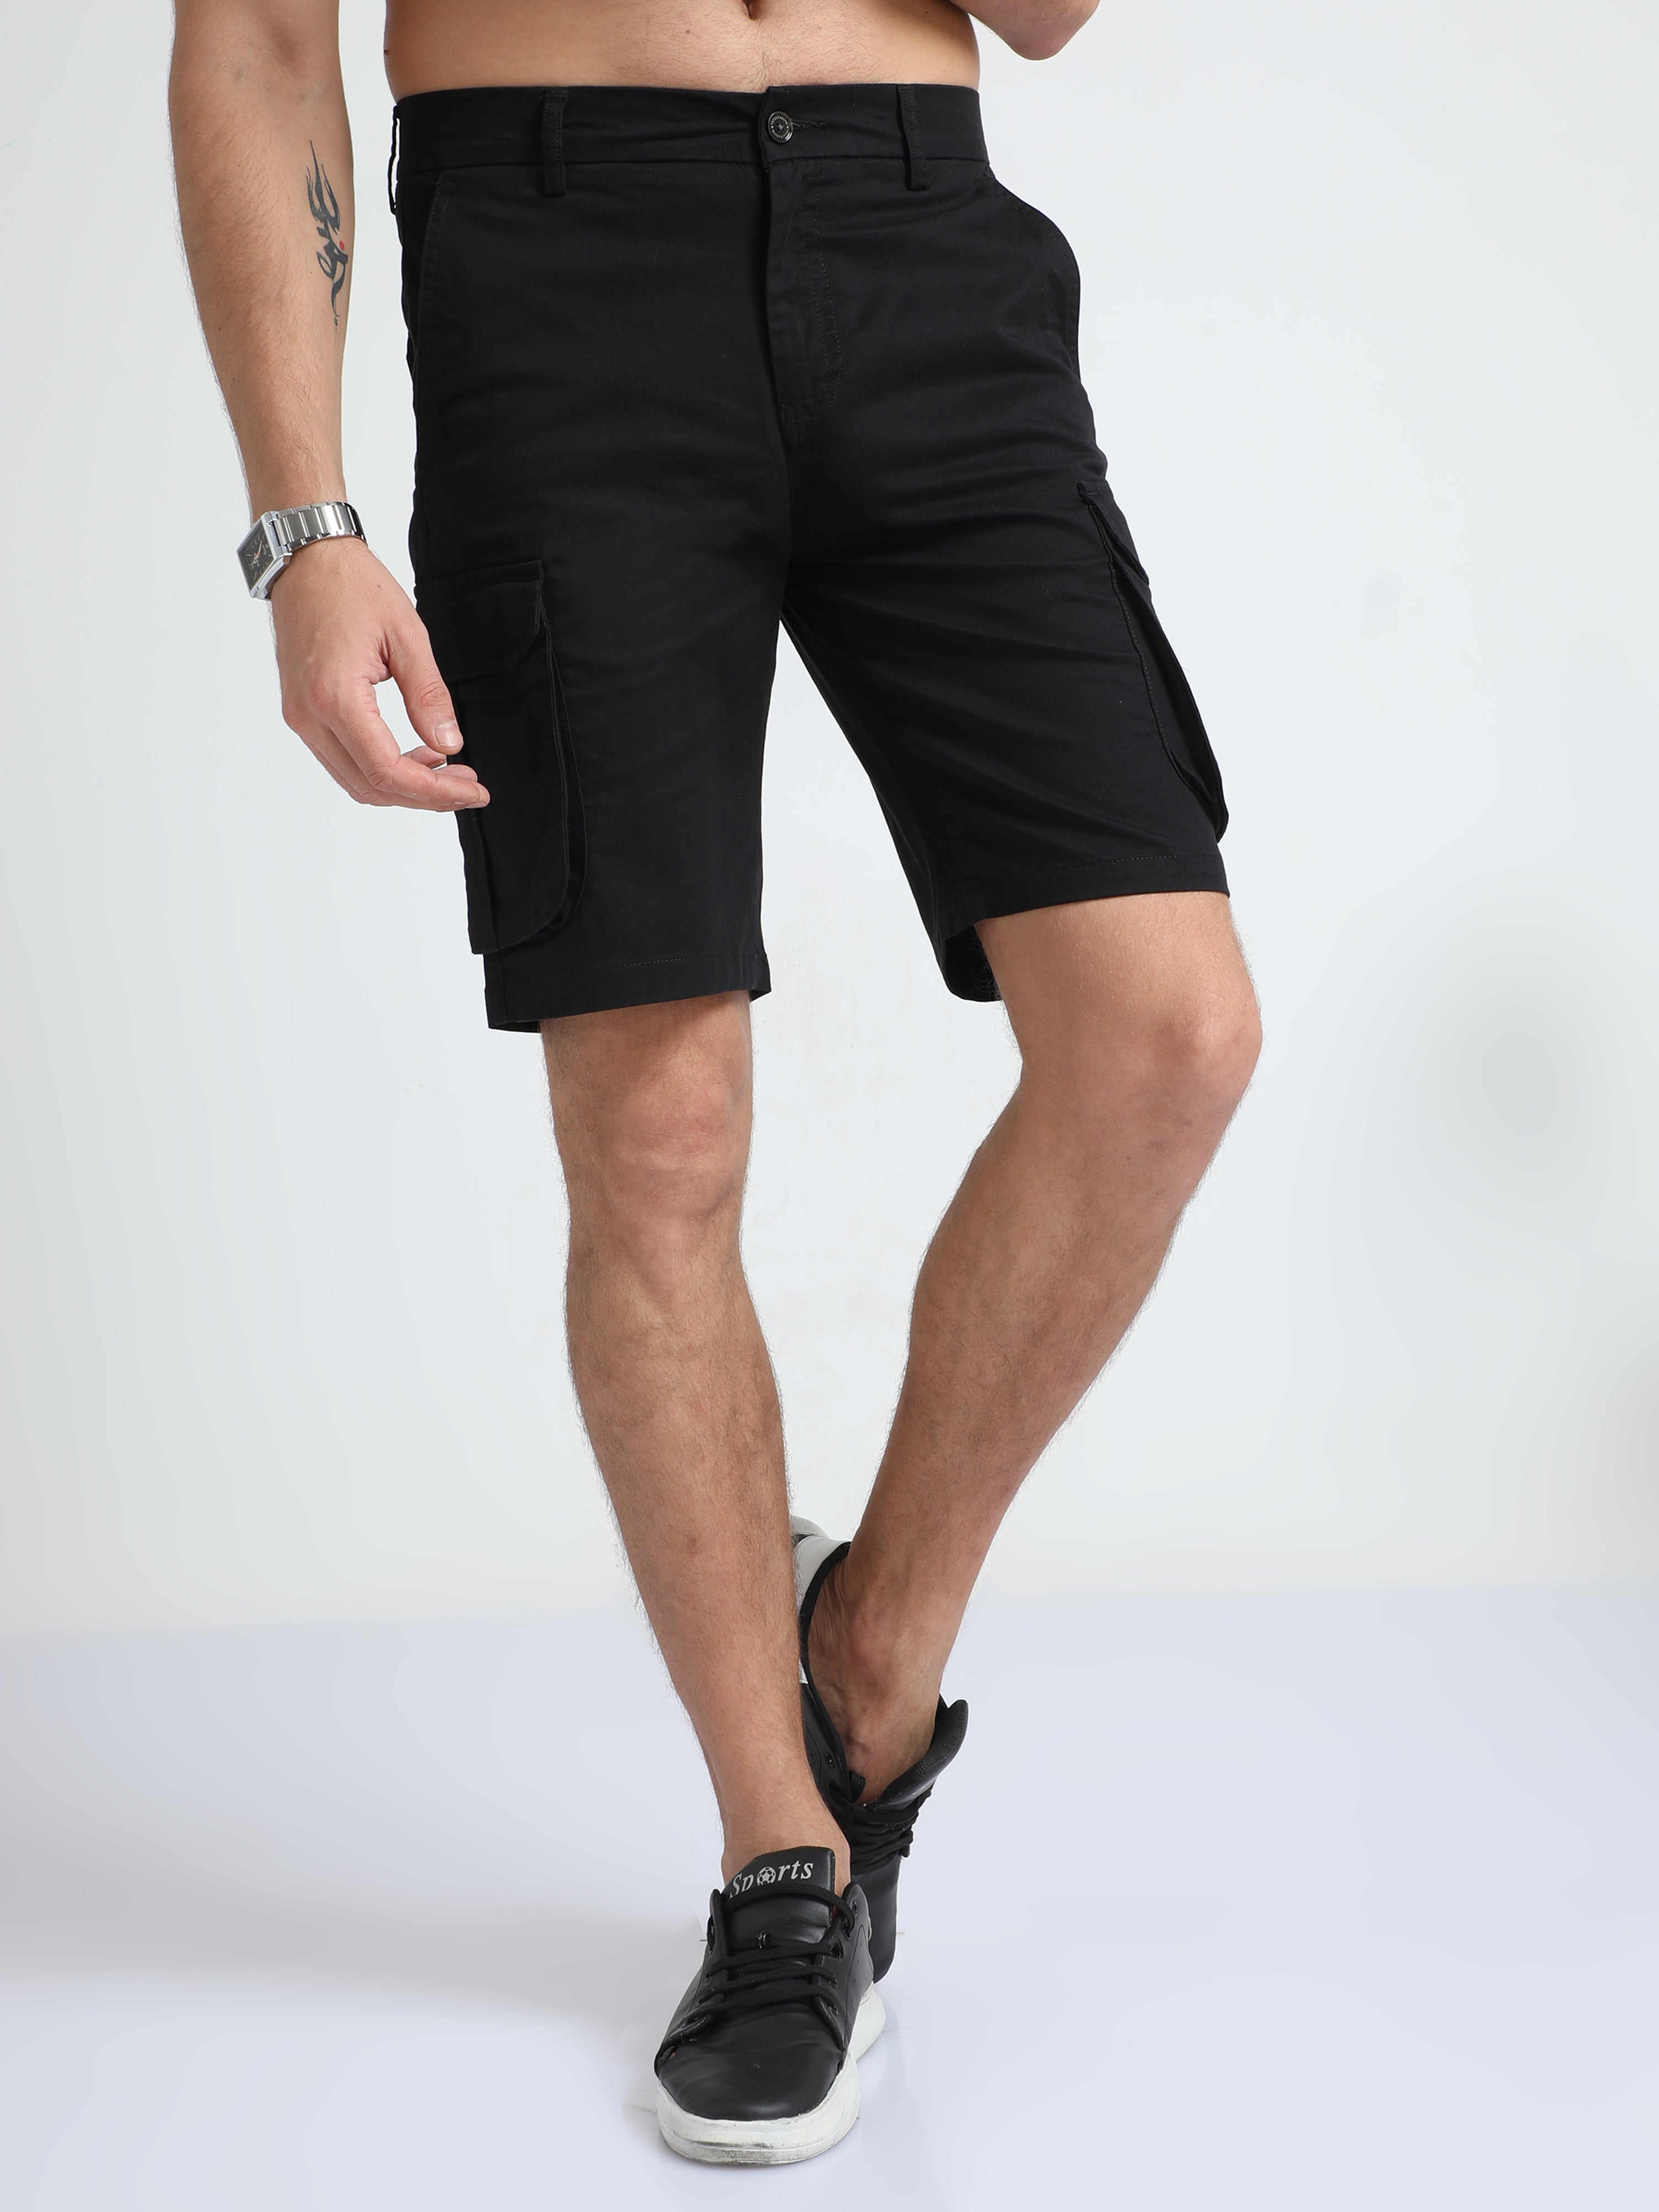 Premium Twill Black Cargo Shorts